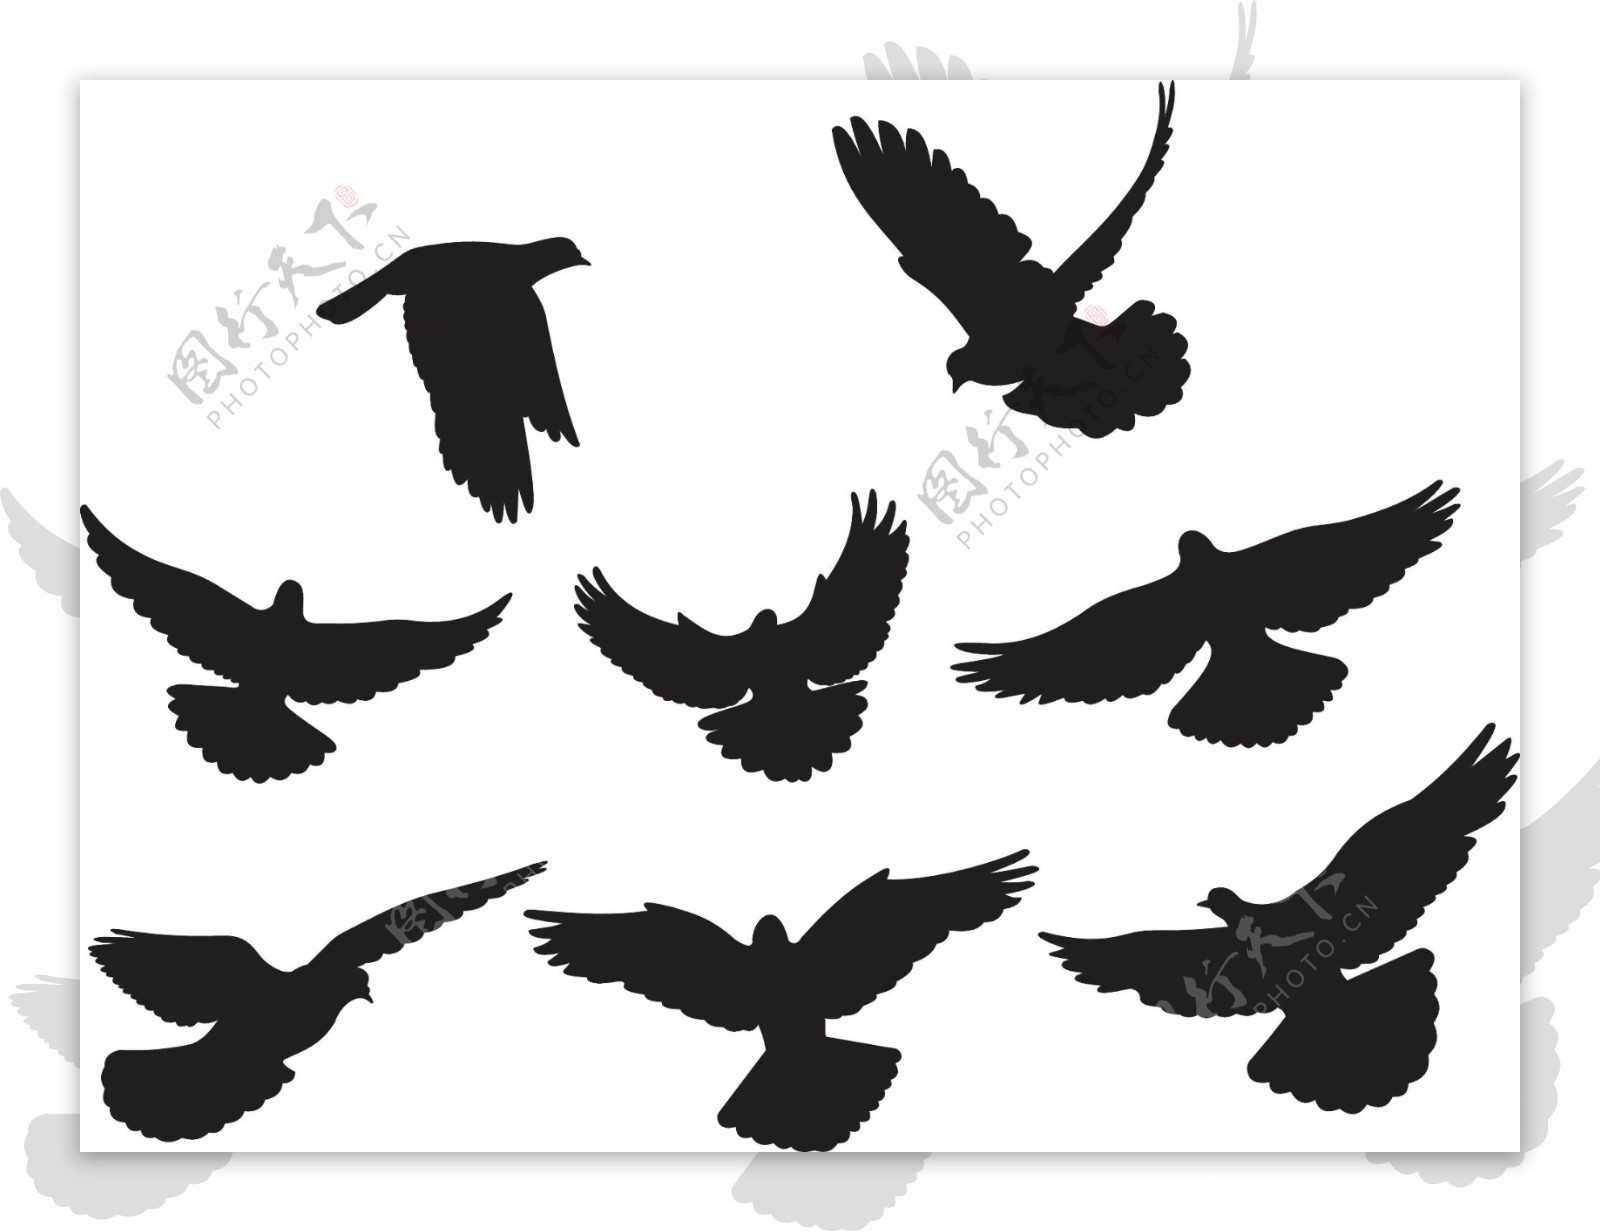 6黑色和白色的鸽子或剪影矢量素材